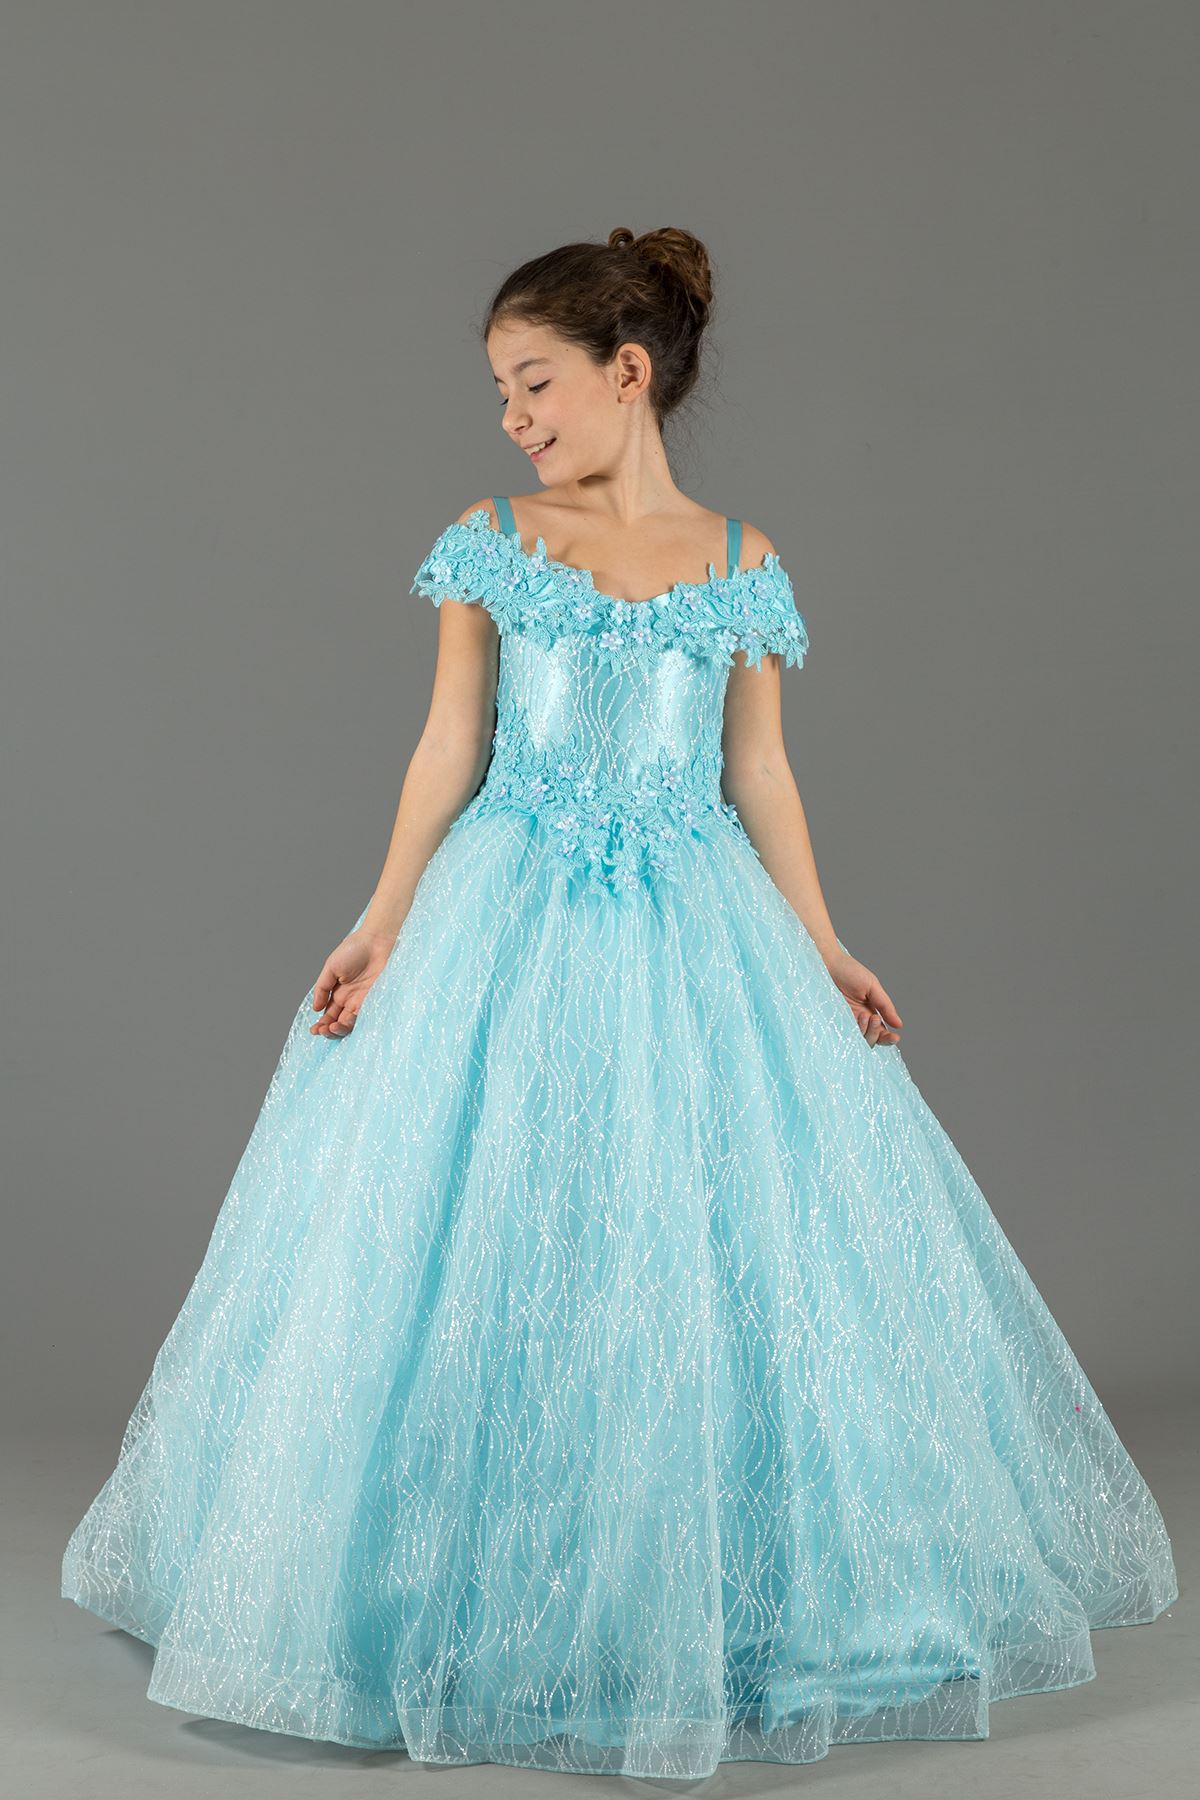 커스텀 은빛, 마돈나 넥, 아플리케 푹신한 소녀의 이브닝 드레스 576 베이비 블루